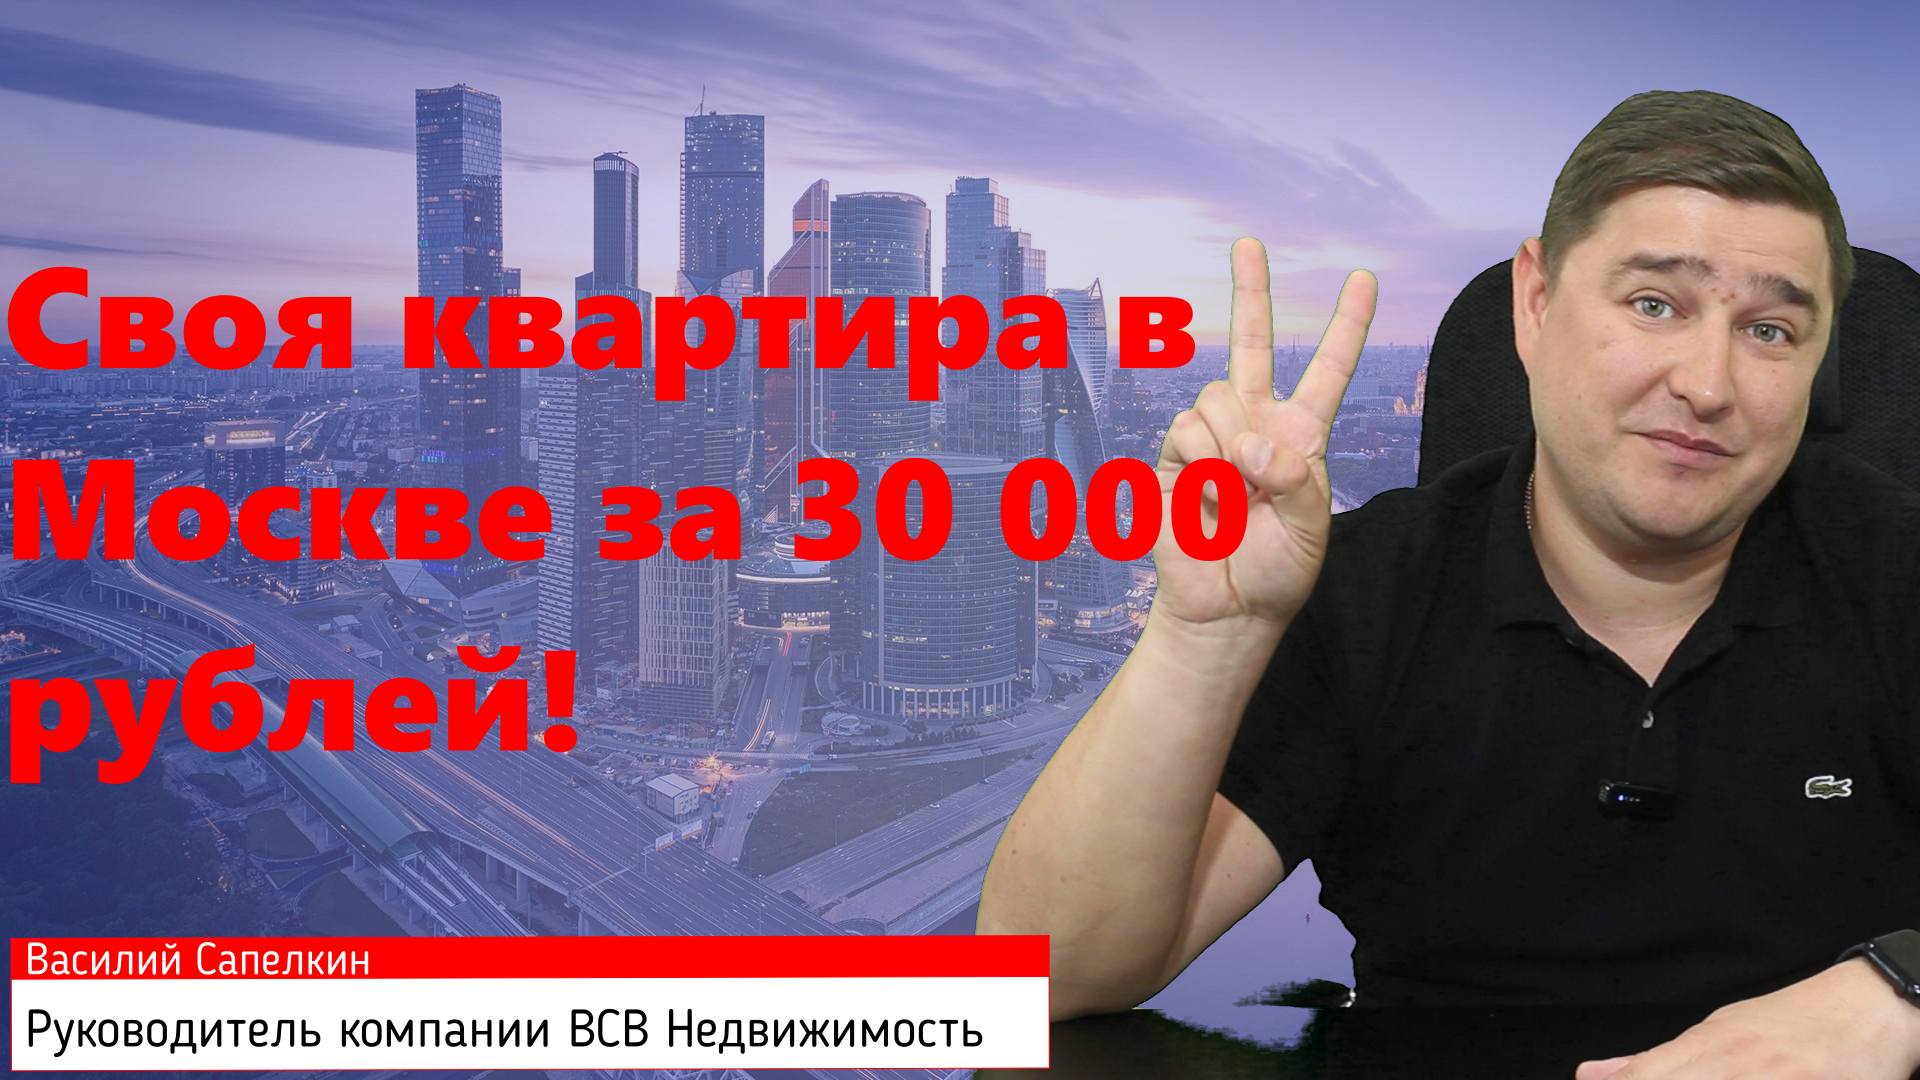 Квартира в Москве с платежом по ипотеке 30 000 рублей